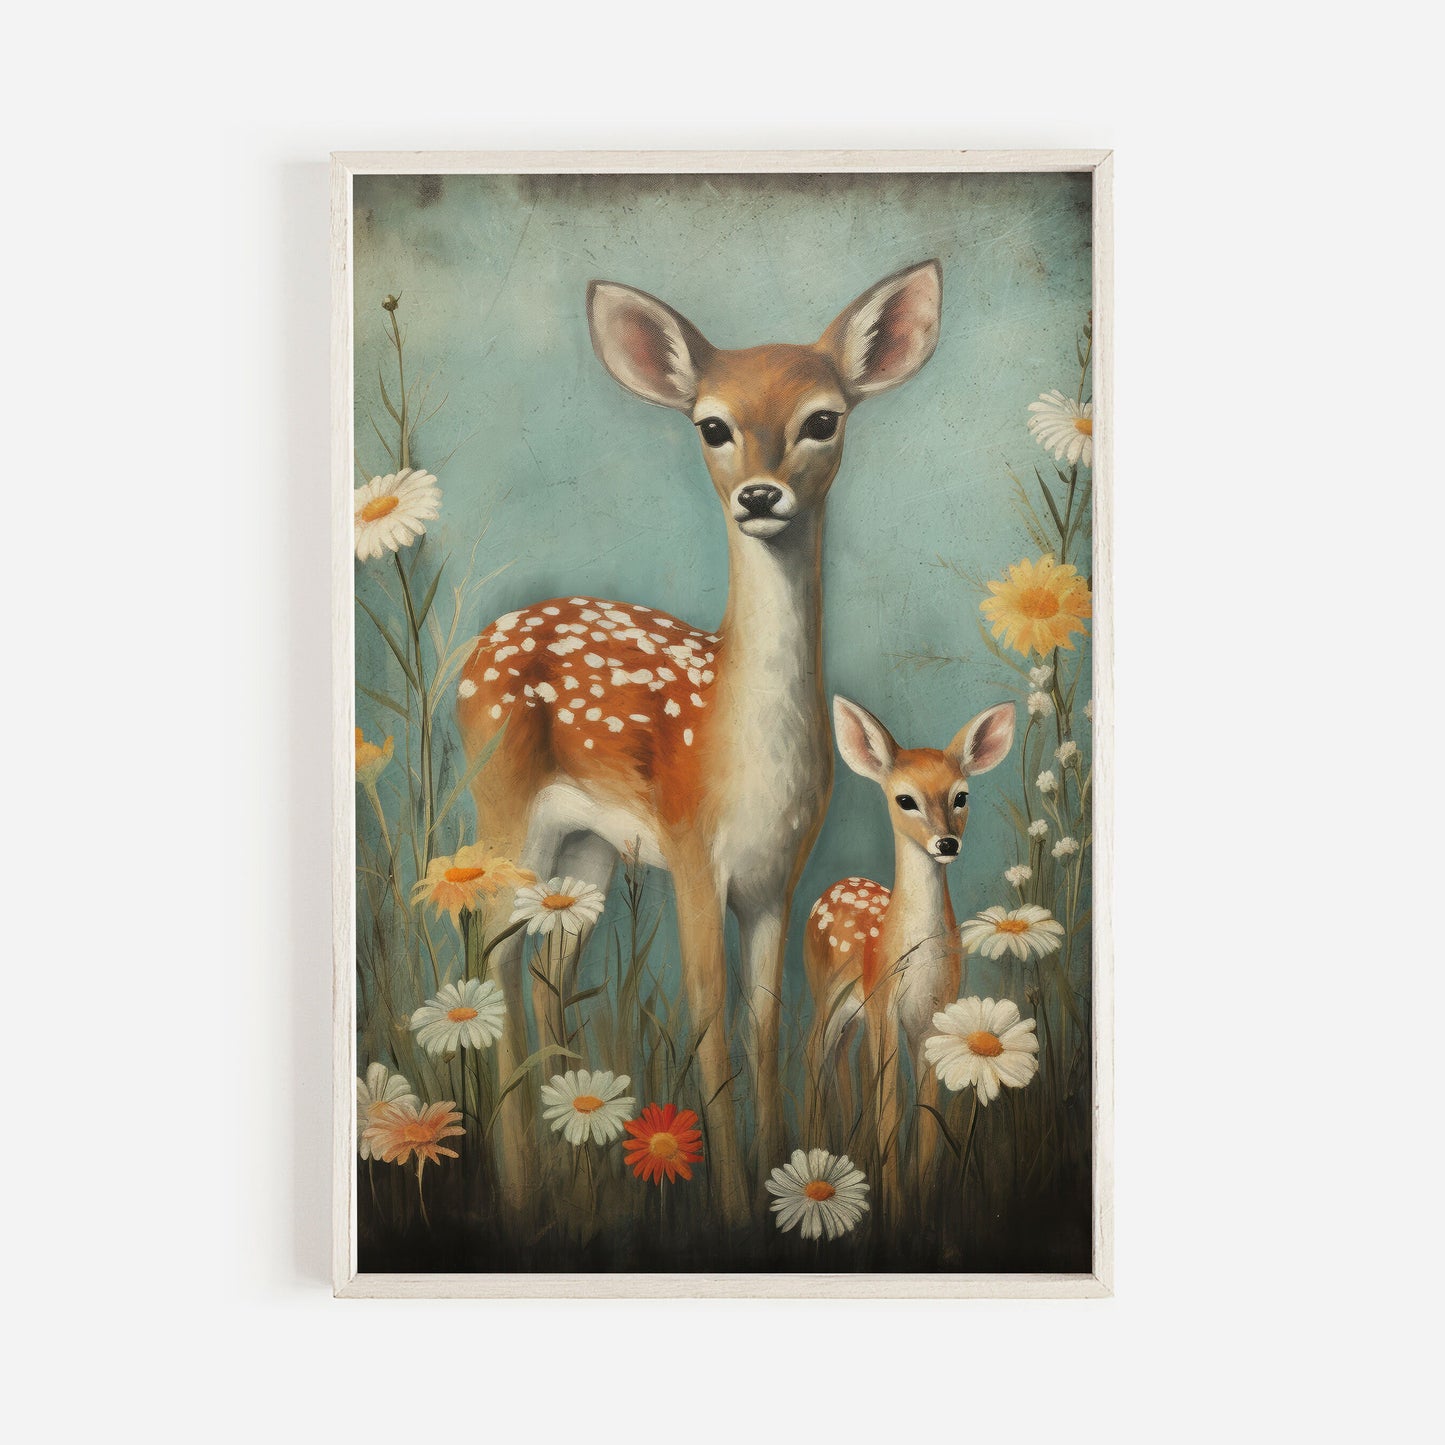 Deer Nursery Decor, Nursery Animal Wall Art, Vintage Deer Painting, Forest Animal Print, Cute Kids Room Decor, DIGITAL Printable Wall Decor